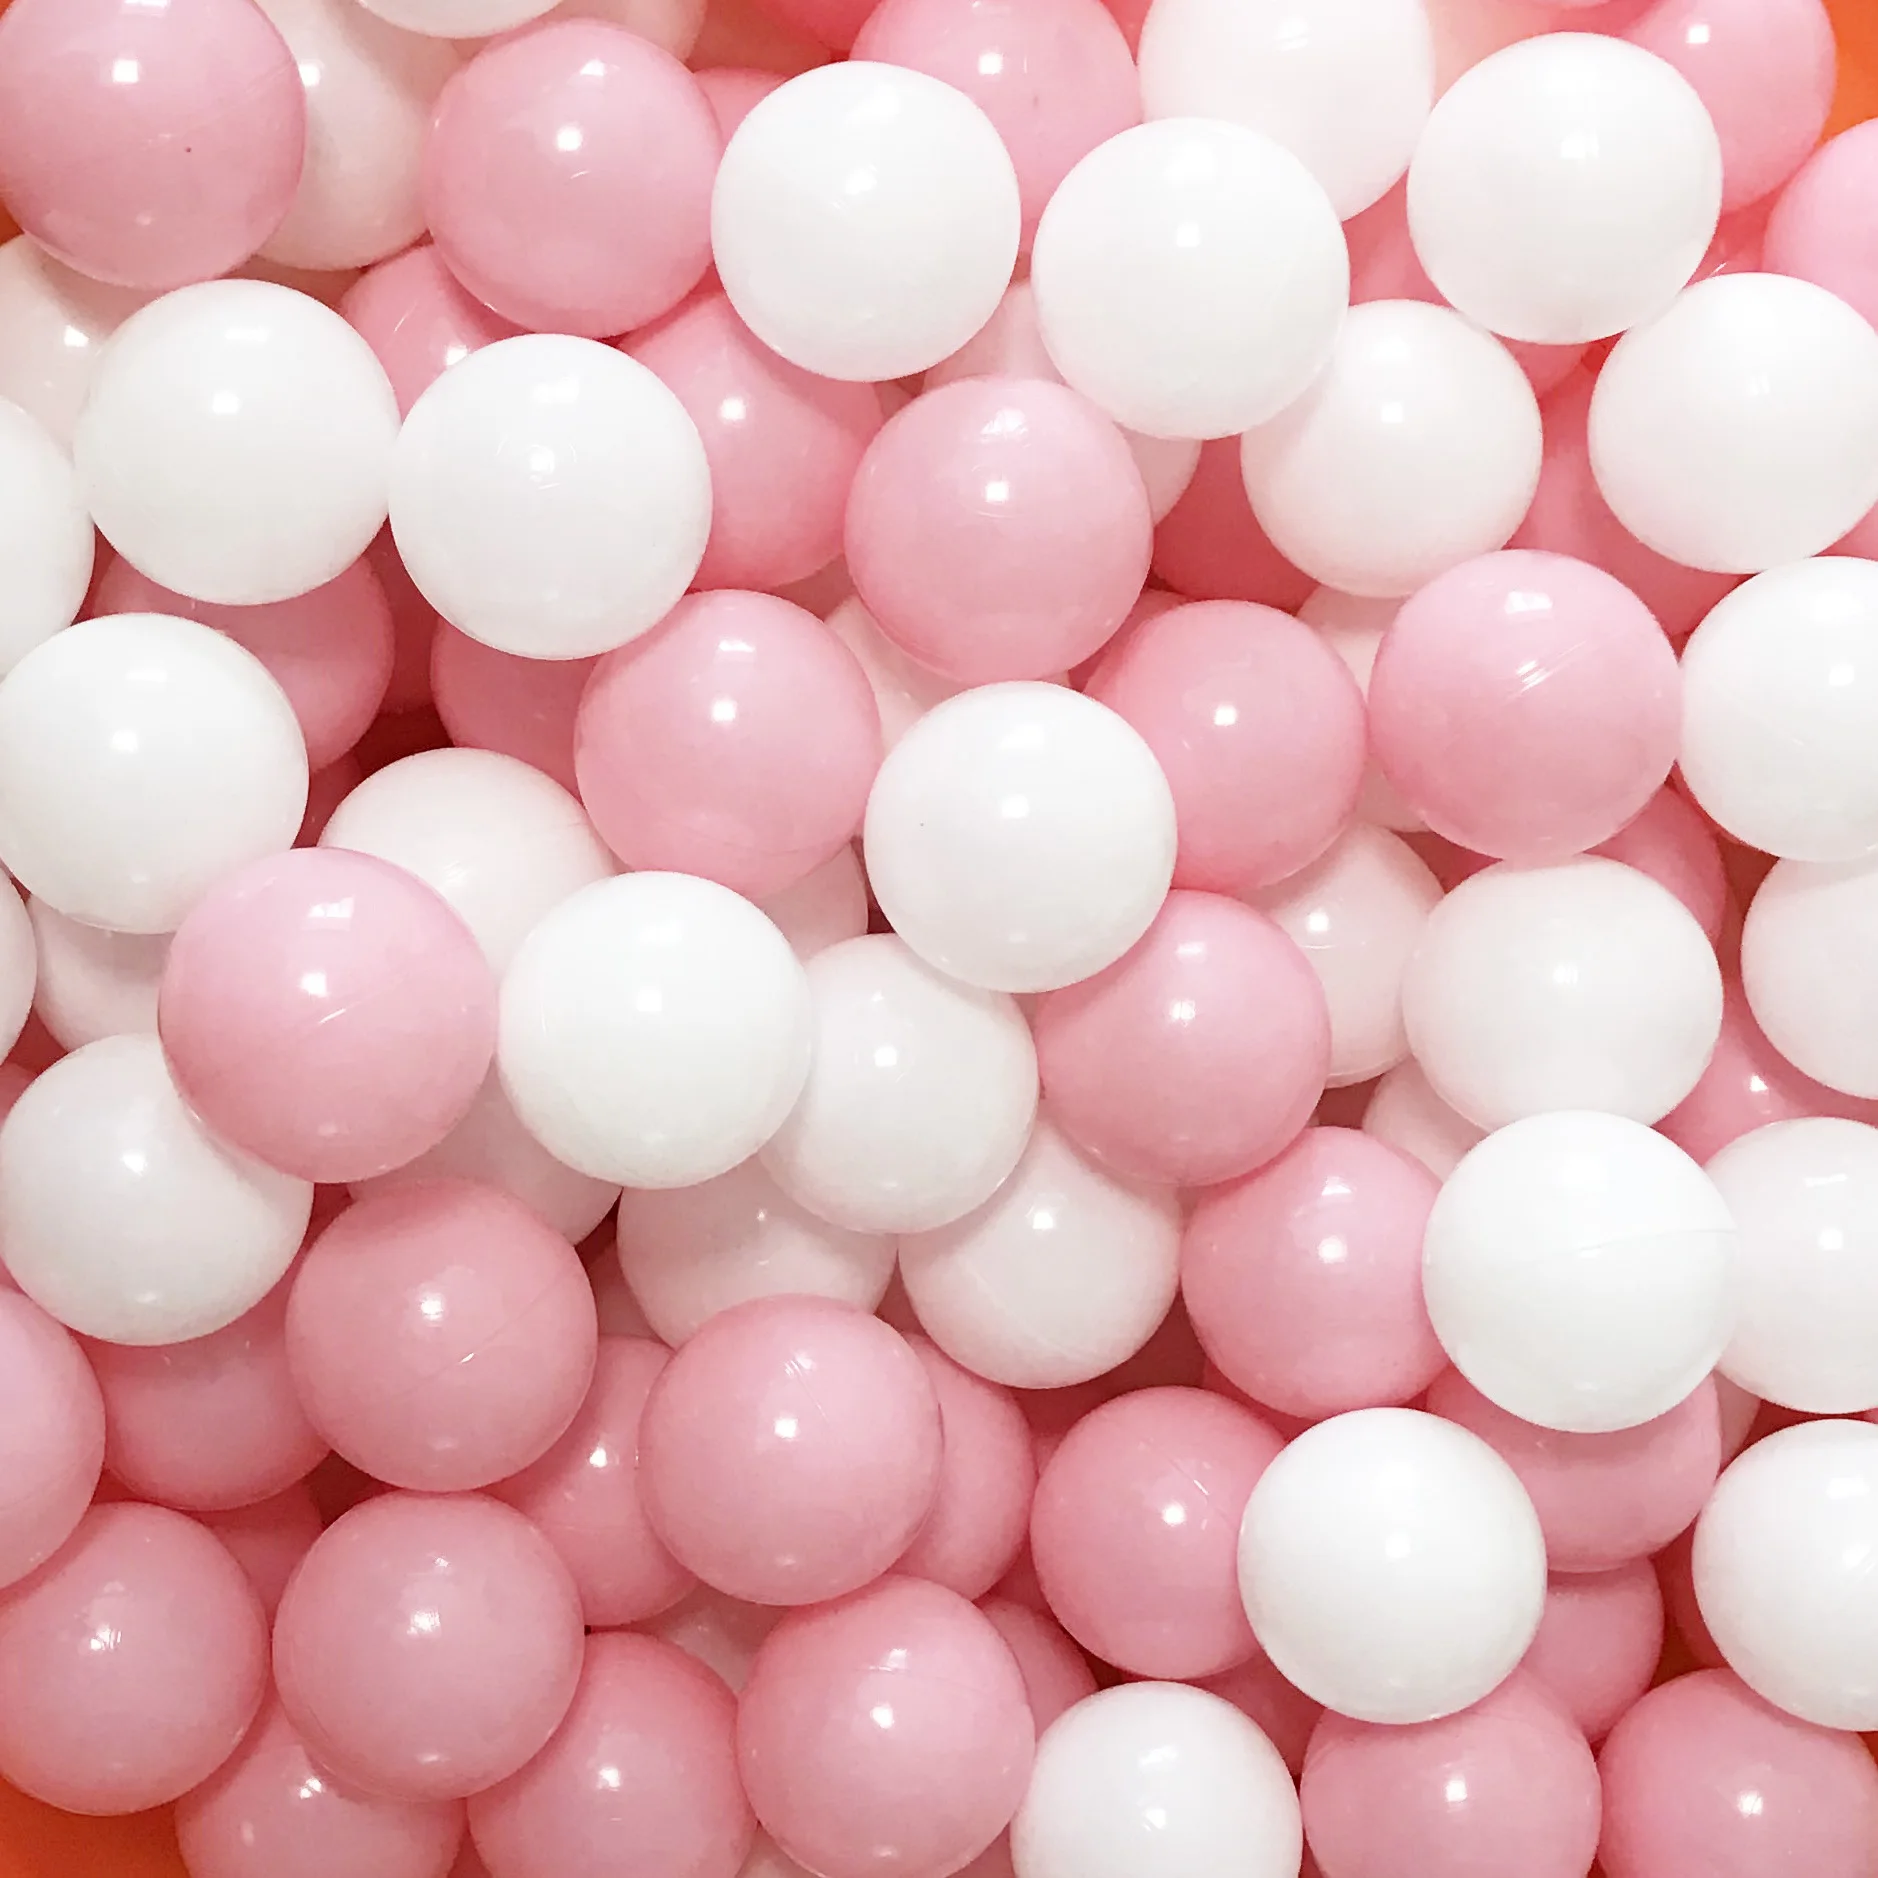 Thenese Мячи 100 шт Пластиковые Детские Игрушечные Мячи Макарон океанские шары маленький размер 5,5 см фталат и BPA бесплатно